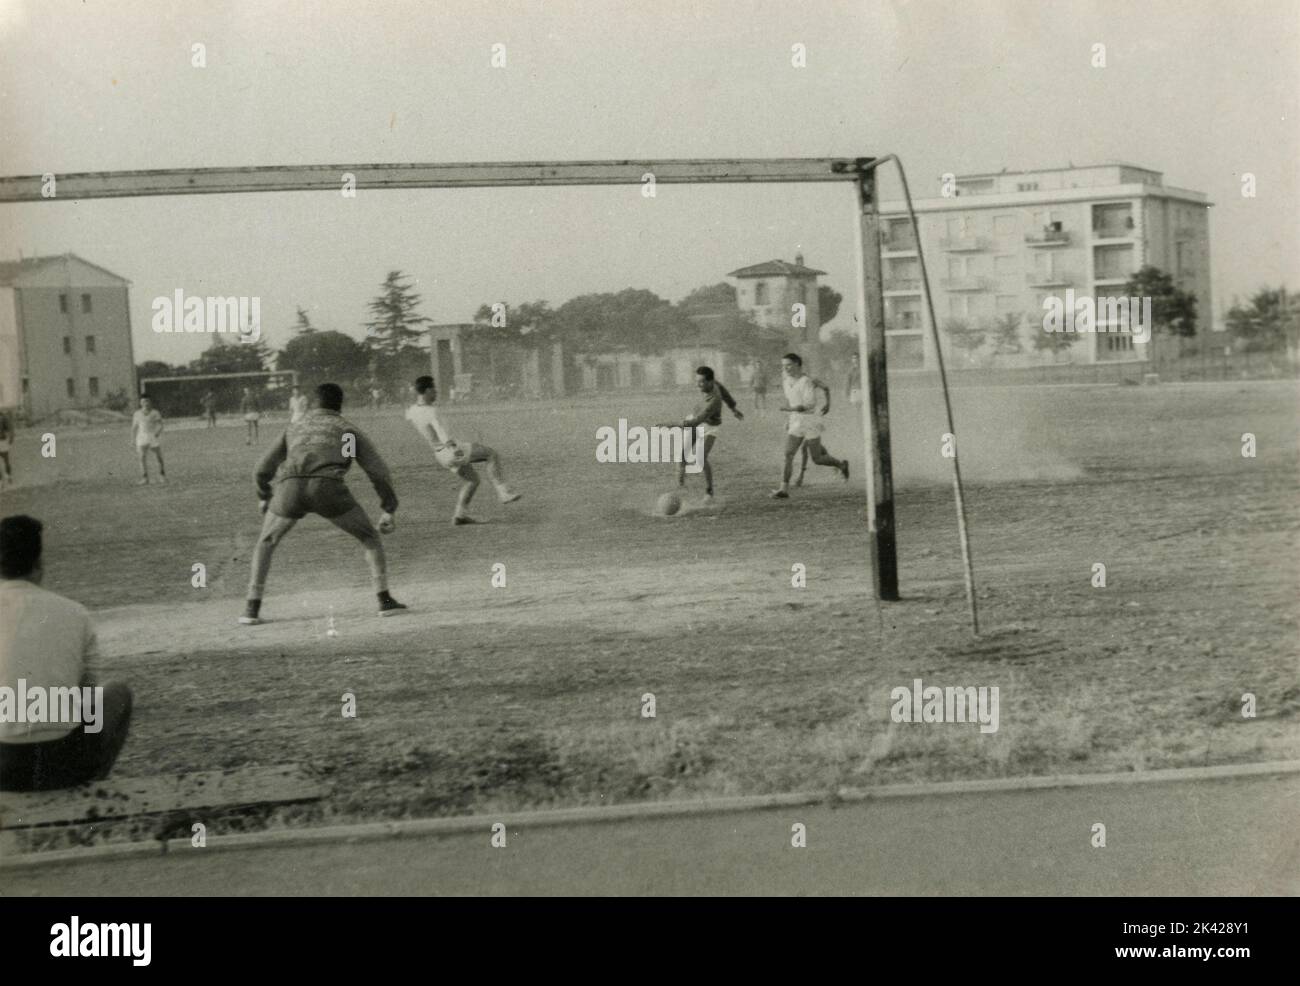 Match de football amateur dans un champ poussiéreux, Italie 1950s Banque D'Images